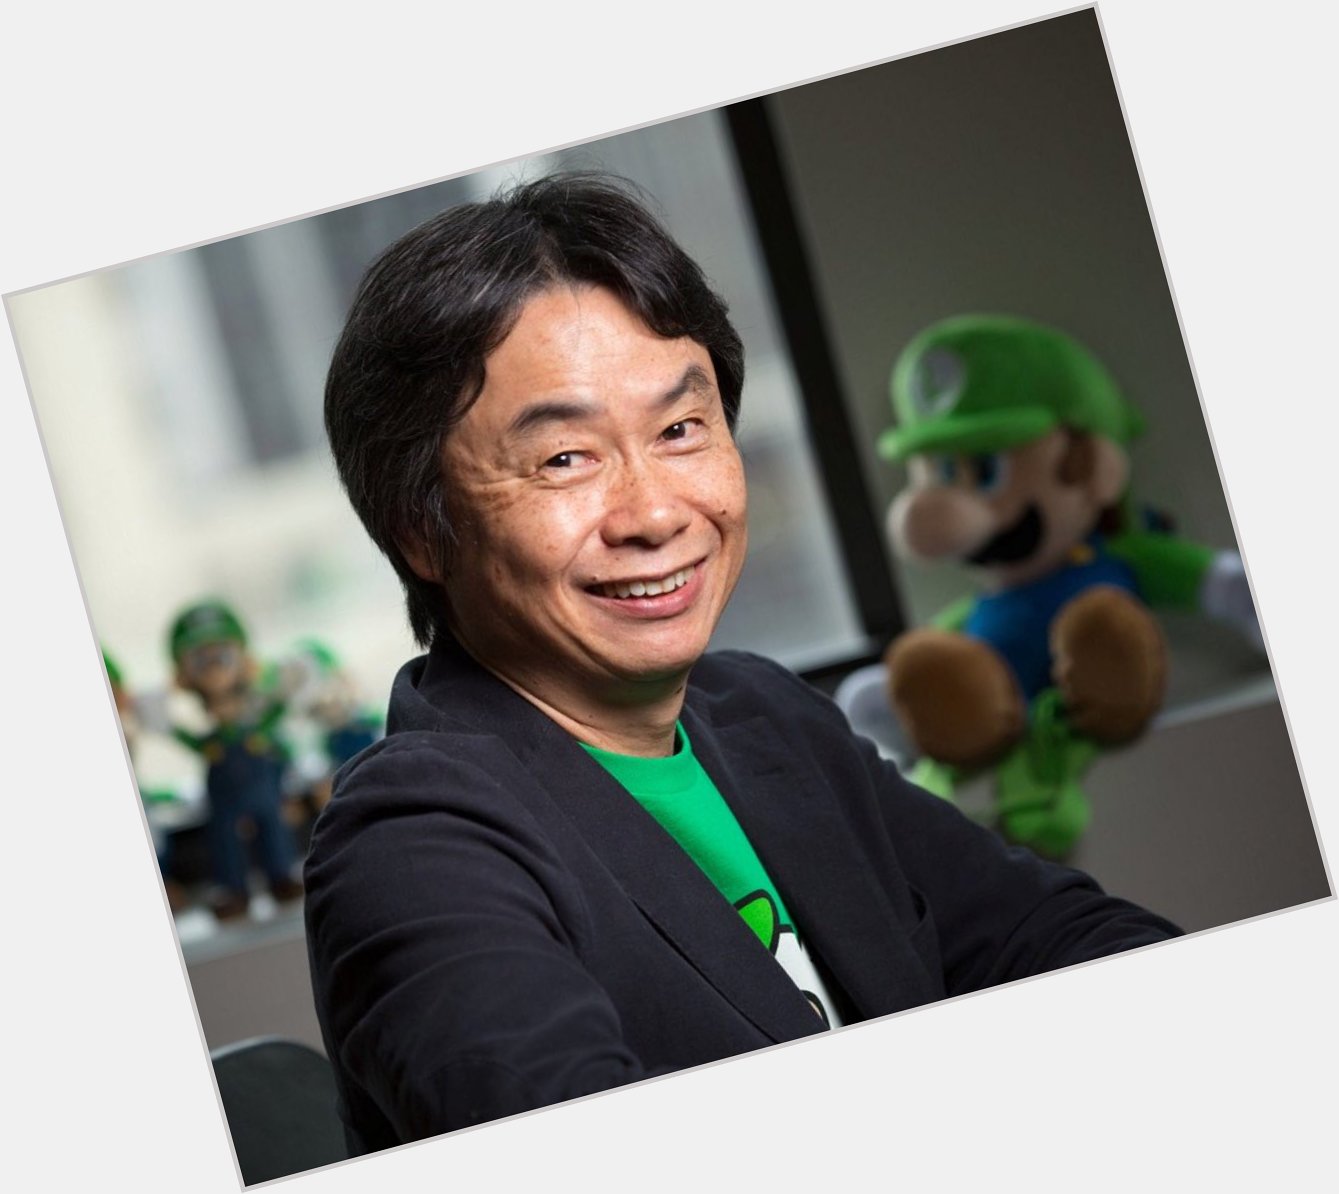 Happy Birthday To Shigeru Miyamoto, born November 16, 1952. 